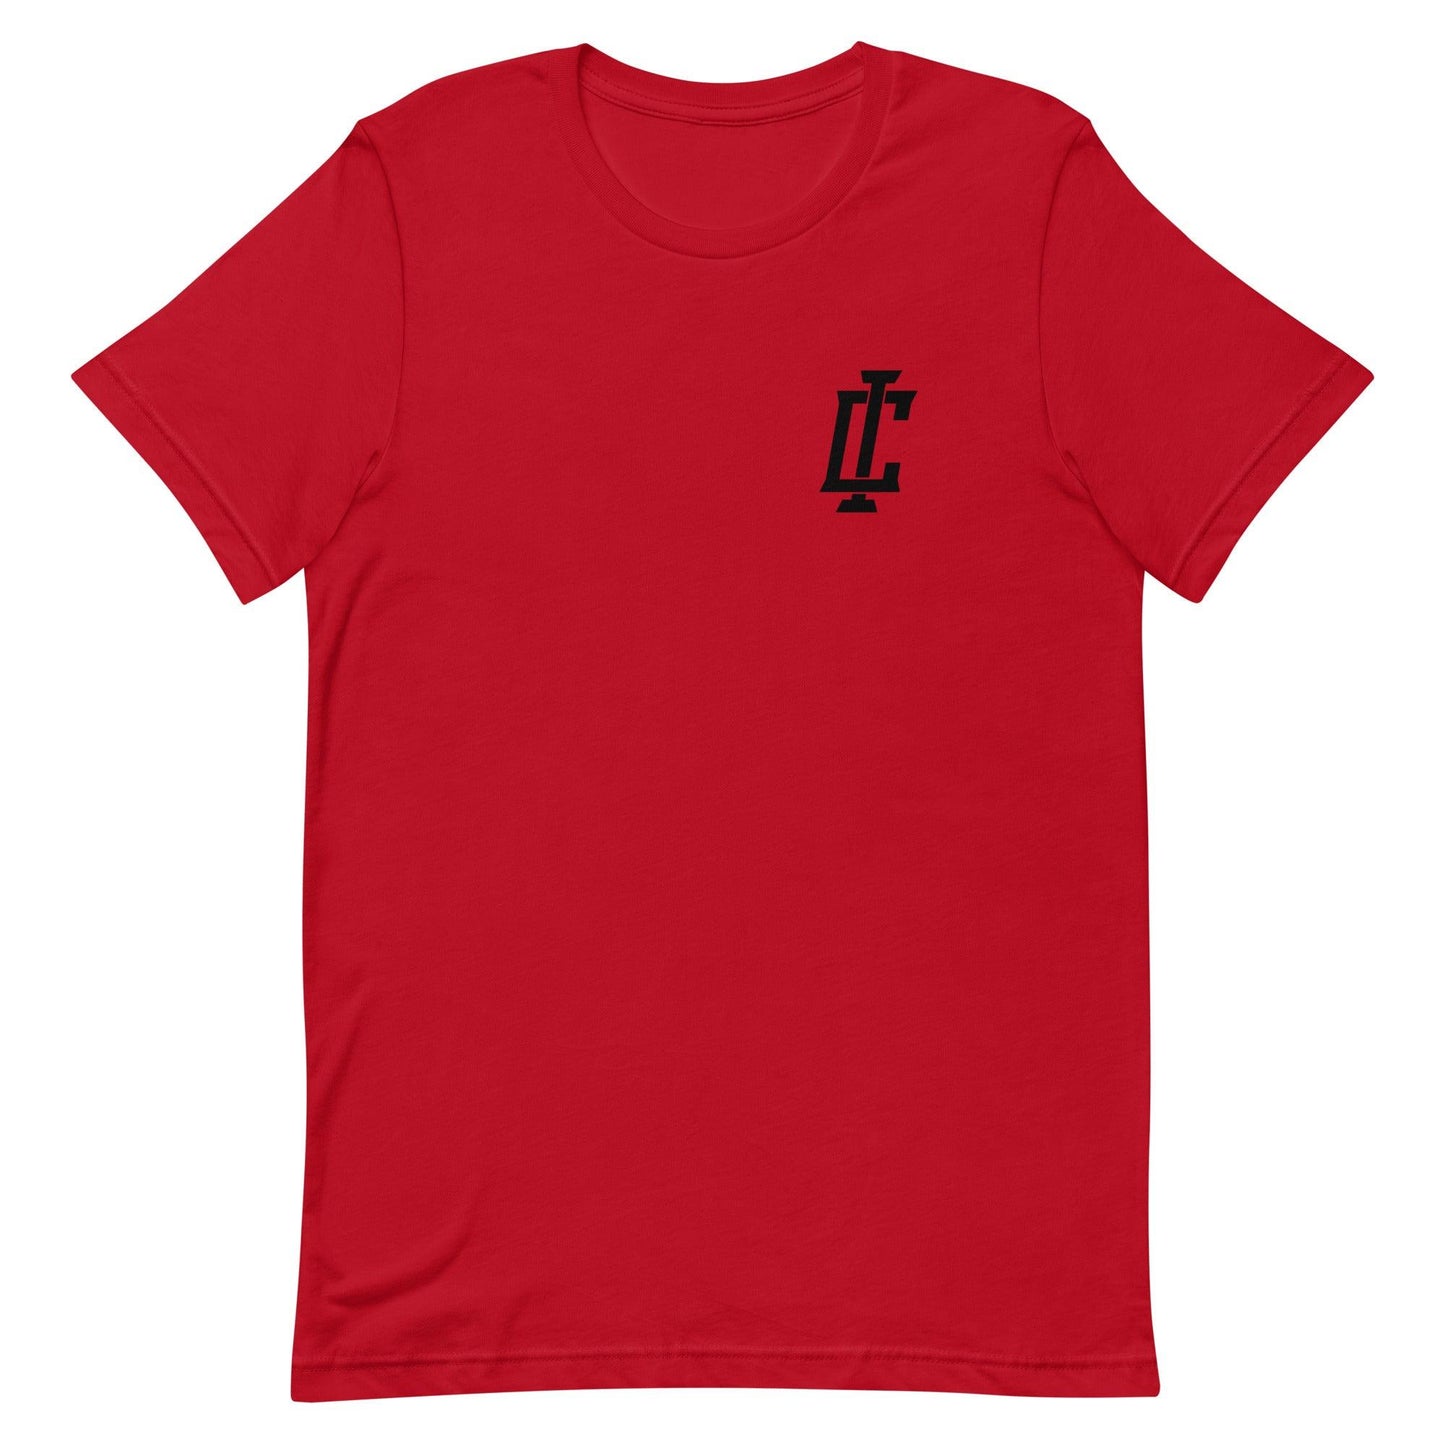 Isaiah Crawford "Essential" t-shirt - Fan Arch